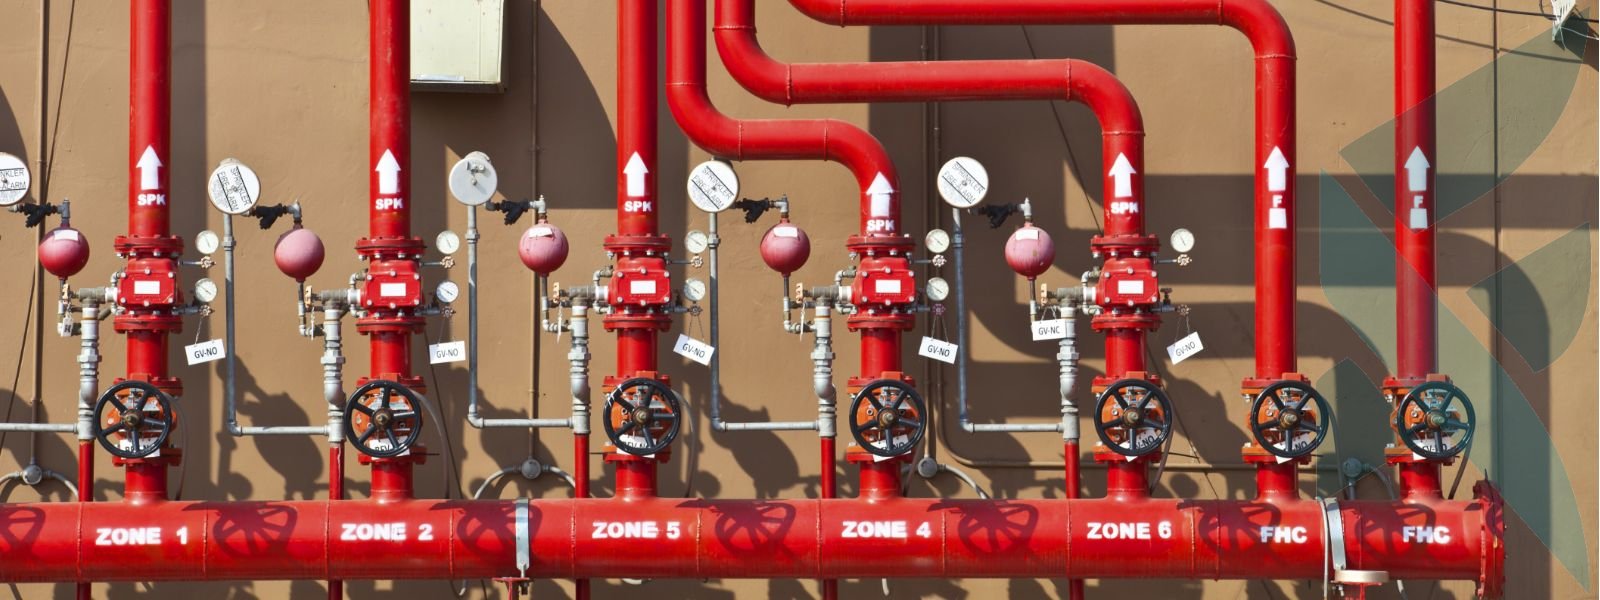 Требования к пожарным шкафам внутреннего противопожарного водопровода 2021